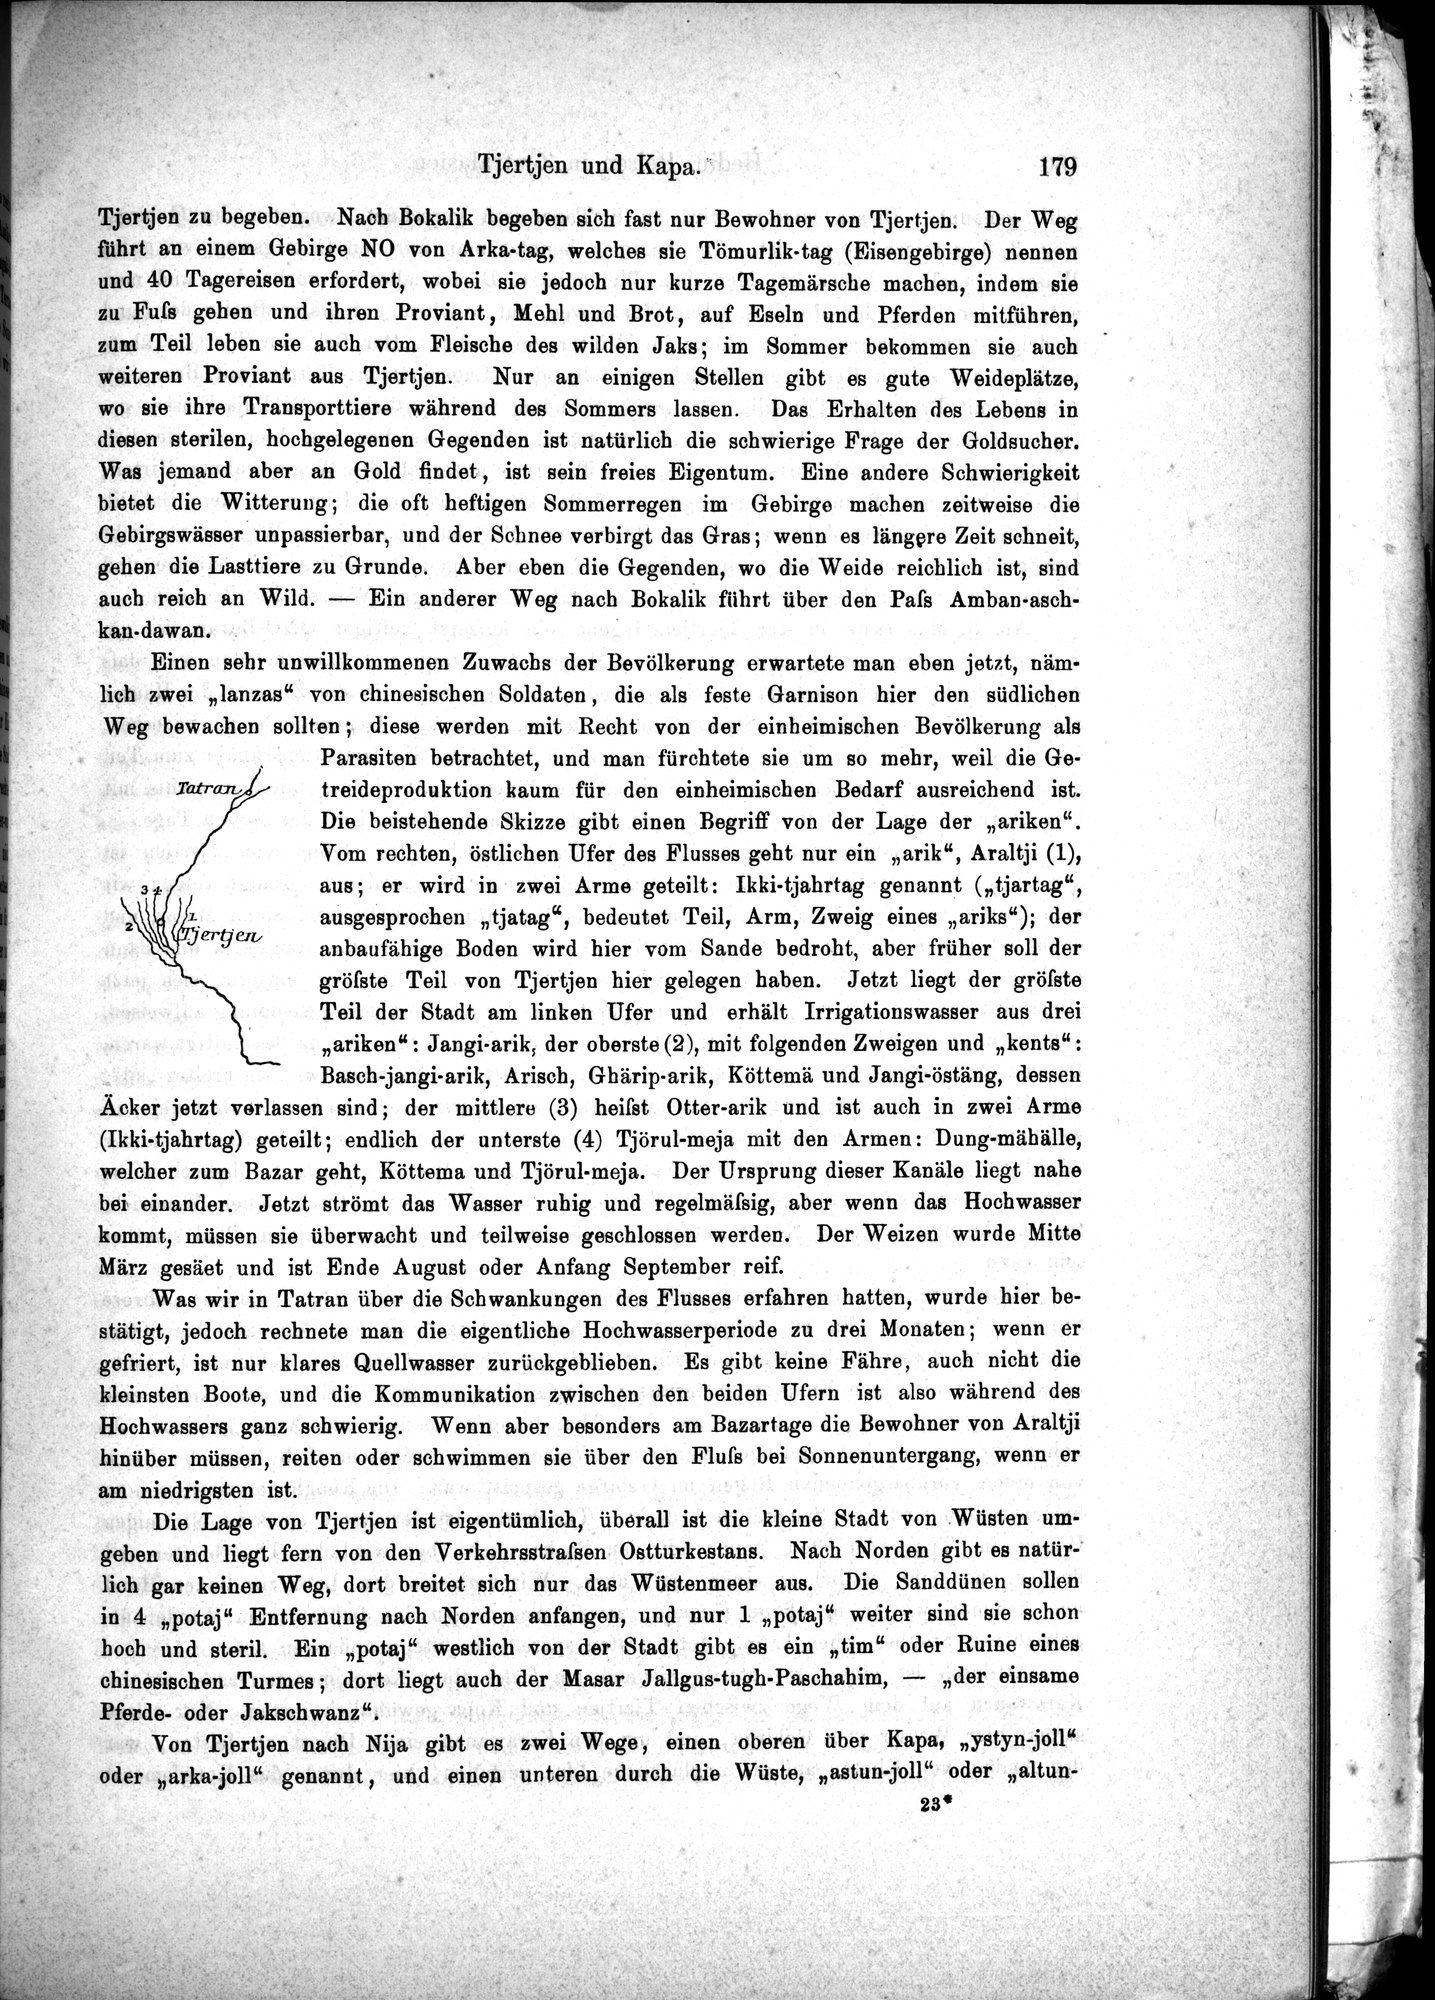 Die Geographische-Wissenschaftlichen Ergebnisse meiner Reisen in Zentralasien, 1894-1897 : vol.1 / Page 191 (Grayscale High Resolution Image)